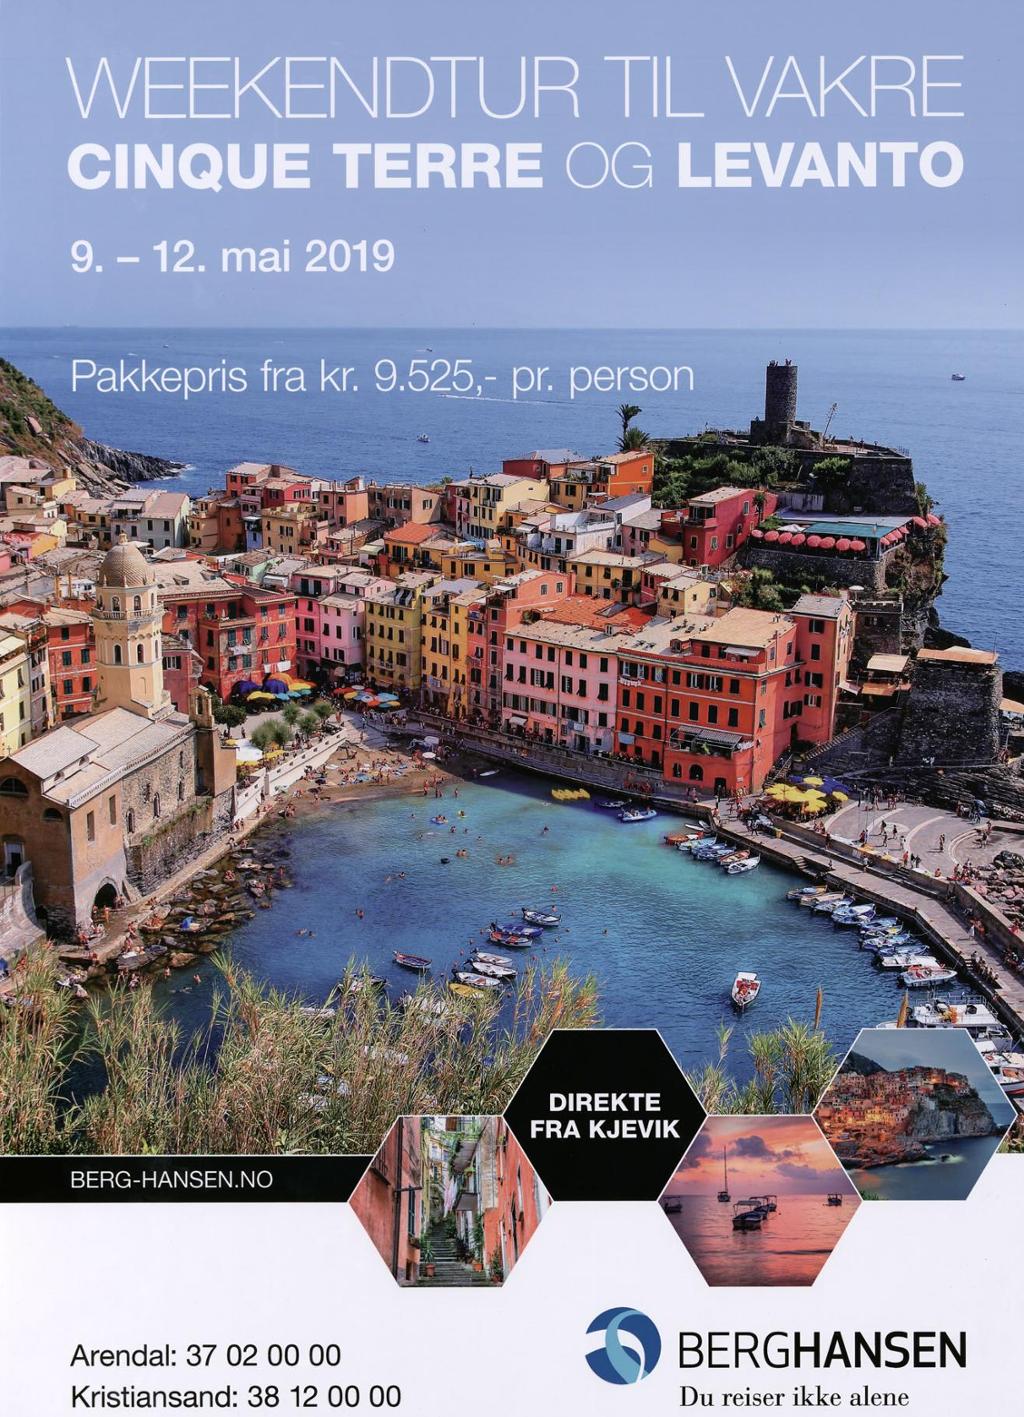 Reklameplakat for reisebyrået Berg-Hansen, som tilbyr pakkepris på weekendtur til Cinque Terre og Levanto, direkte fra Kjevik.